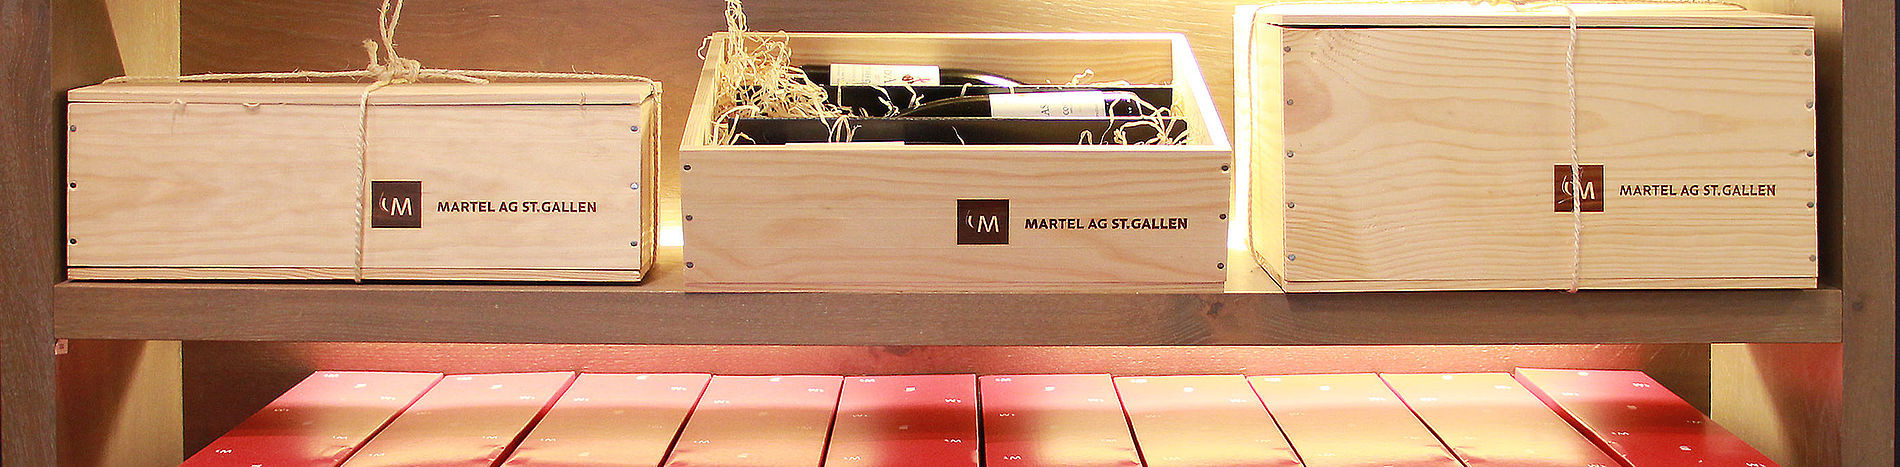 Geschenke Versand
 Geschenke Versand Martel AG St Gallen